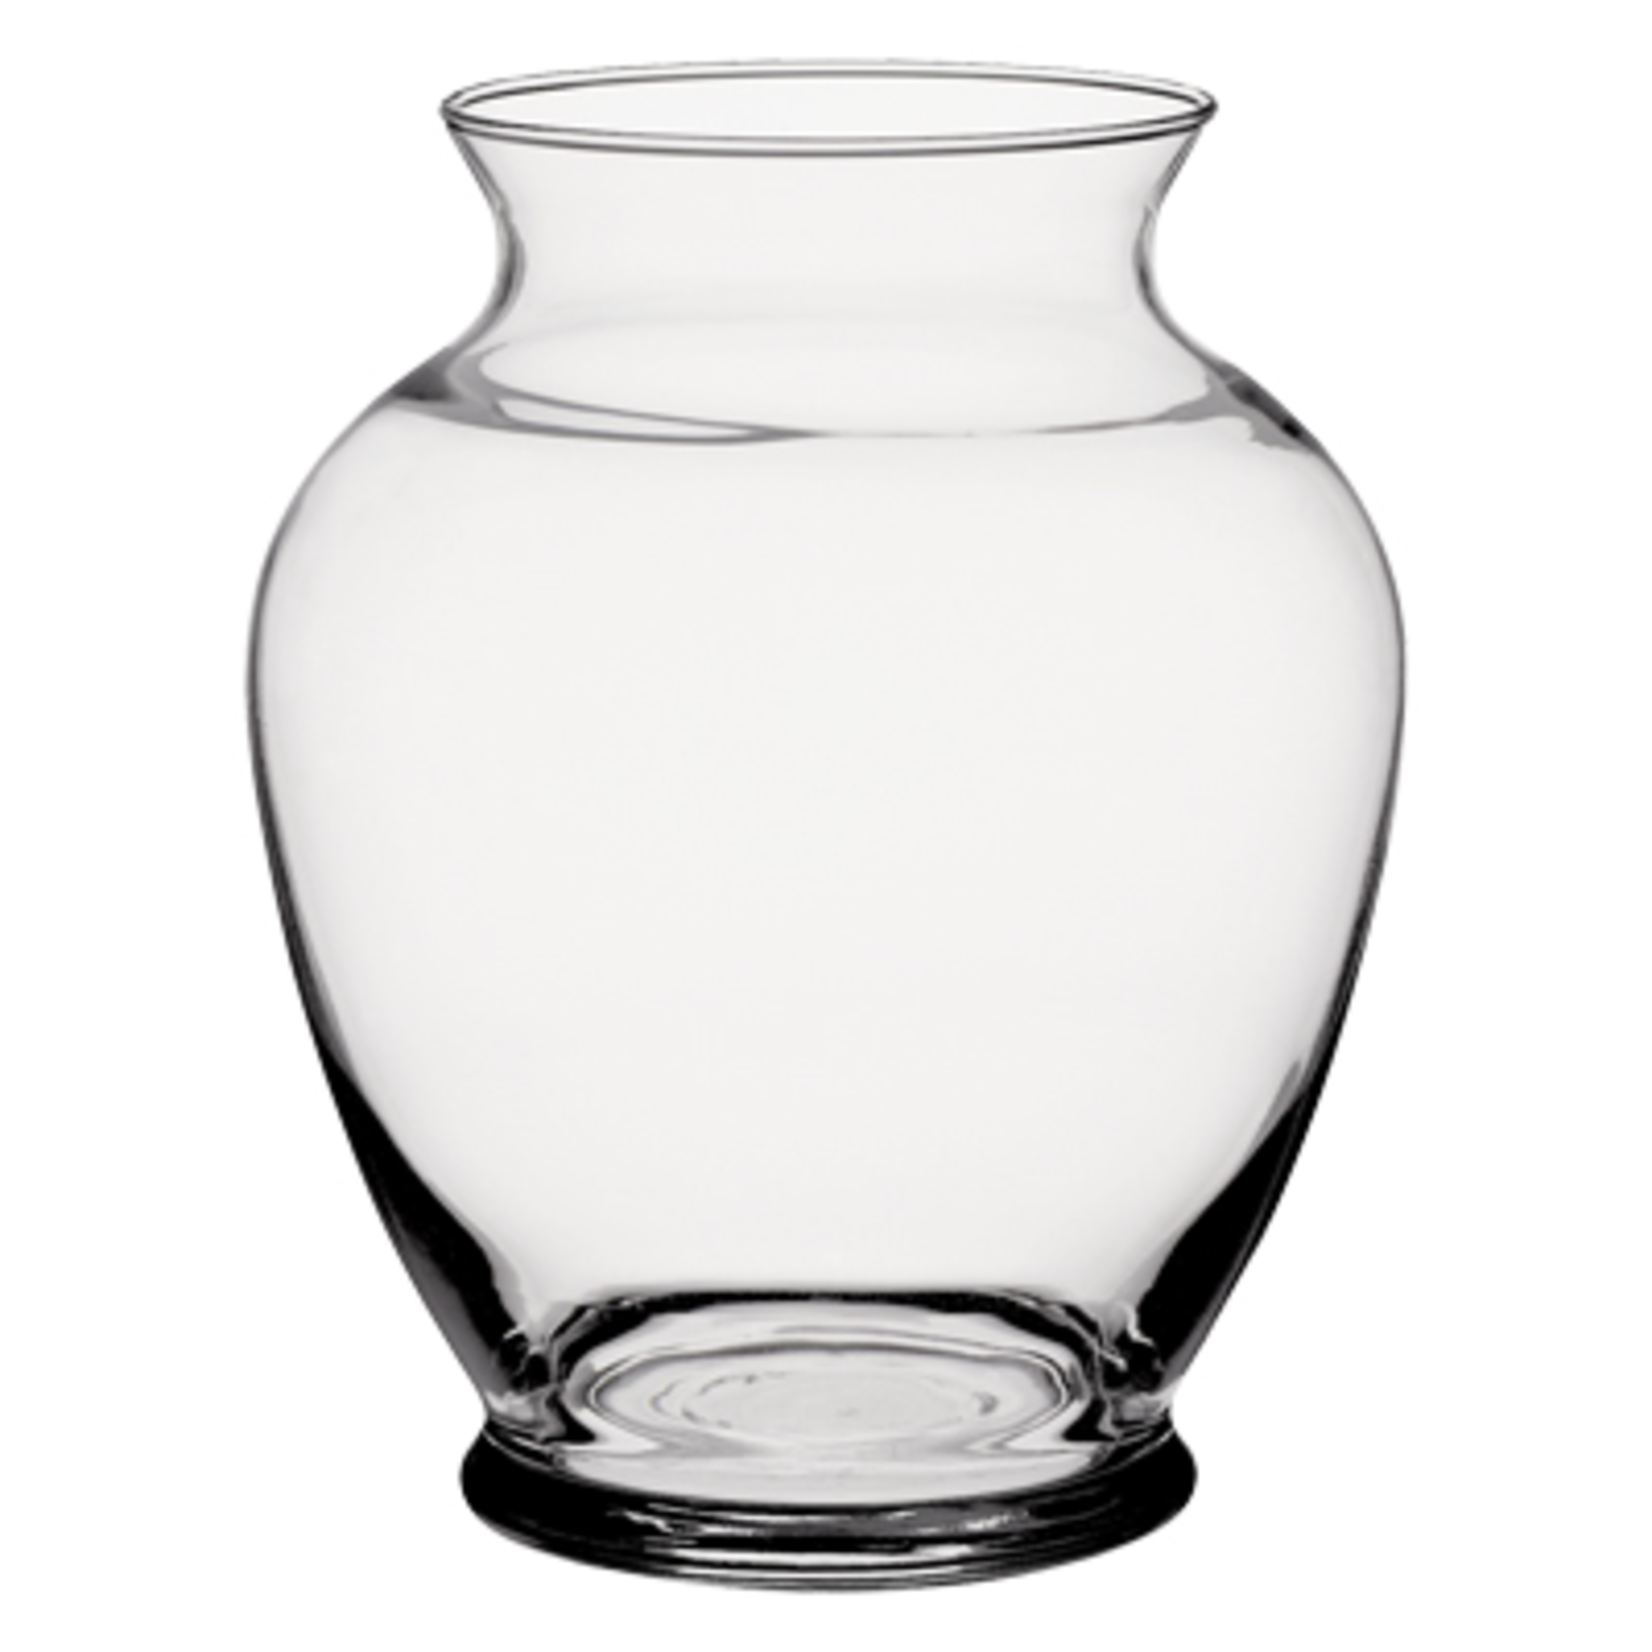 6 1/4"" Ginger Vase - Crystal